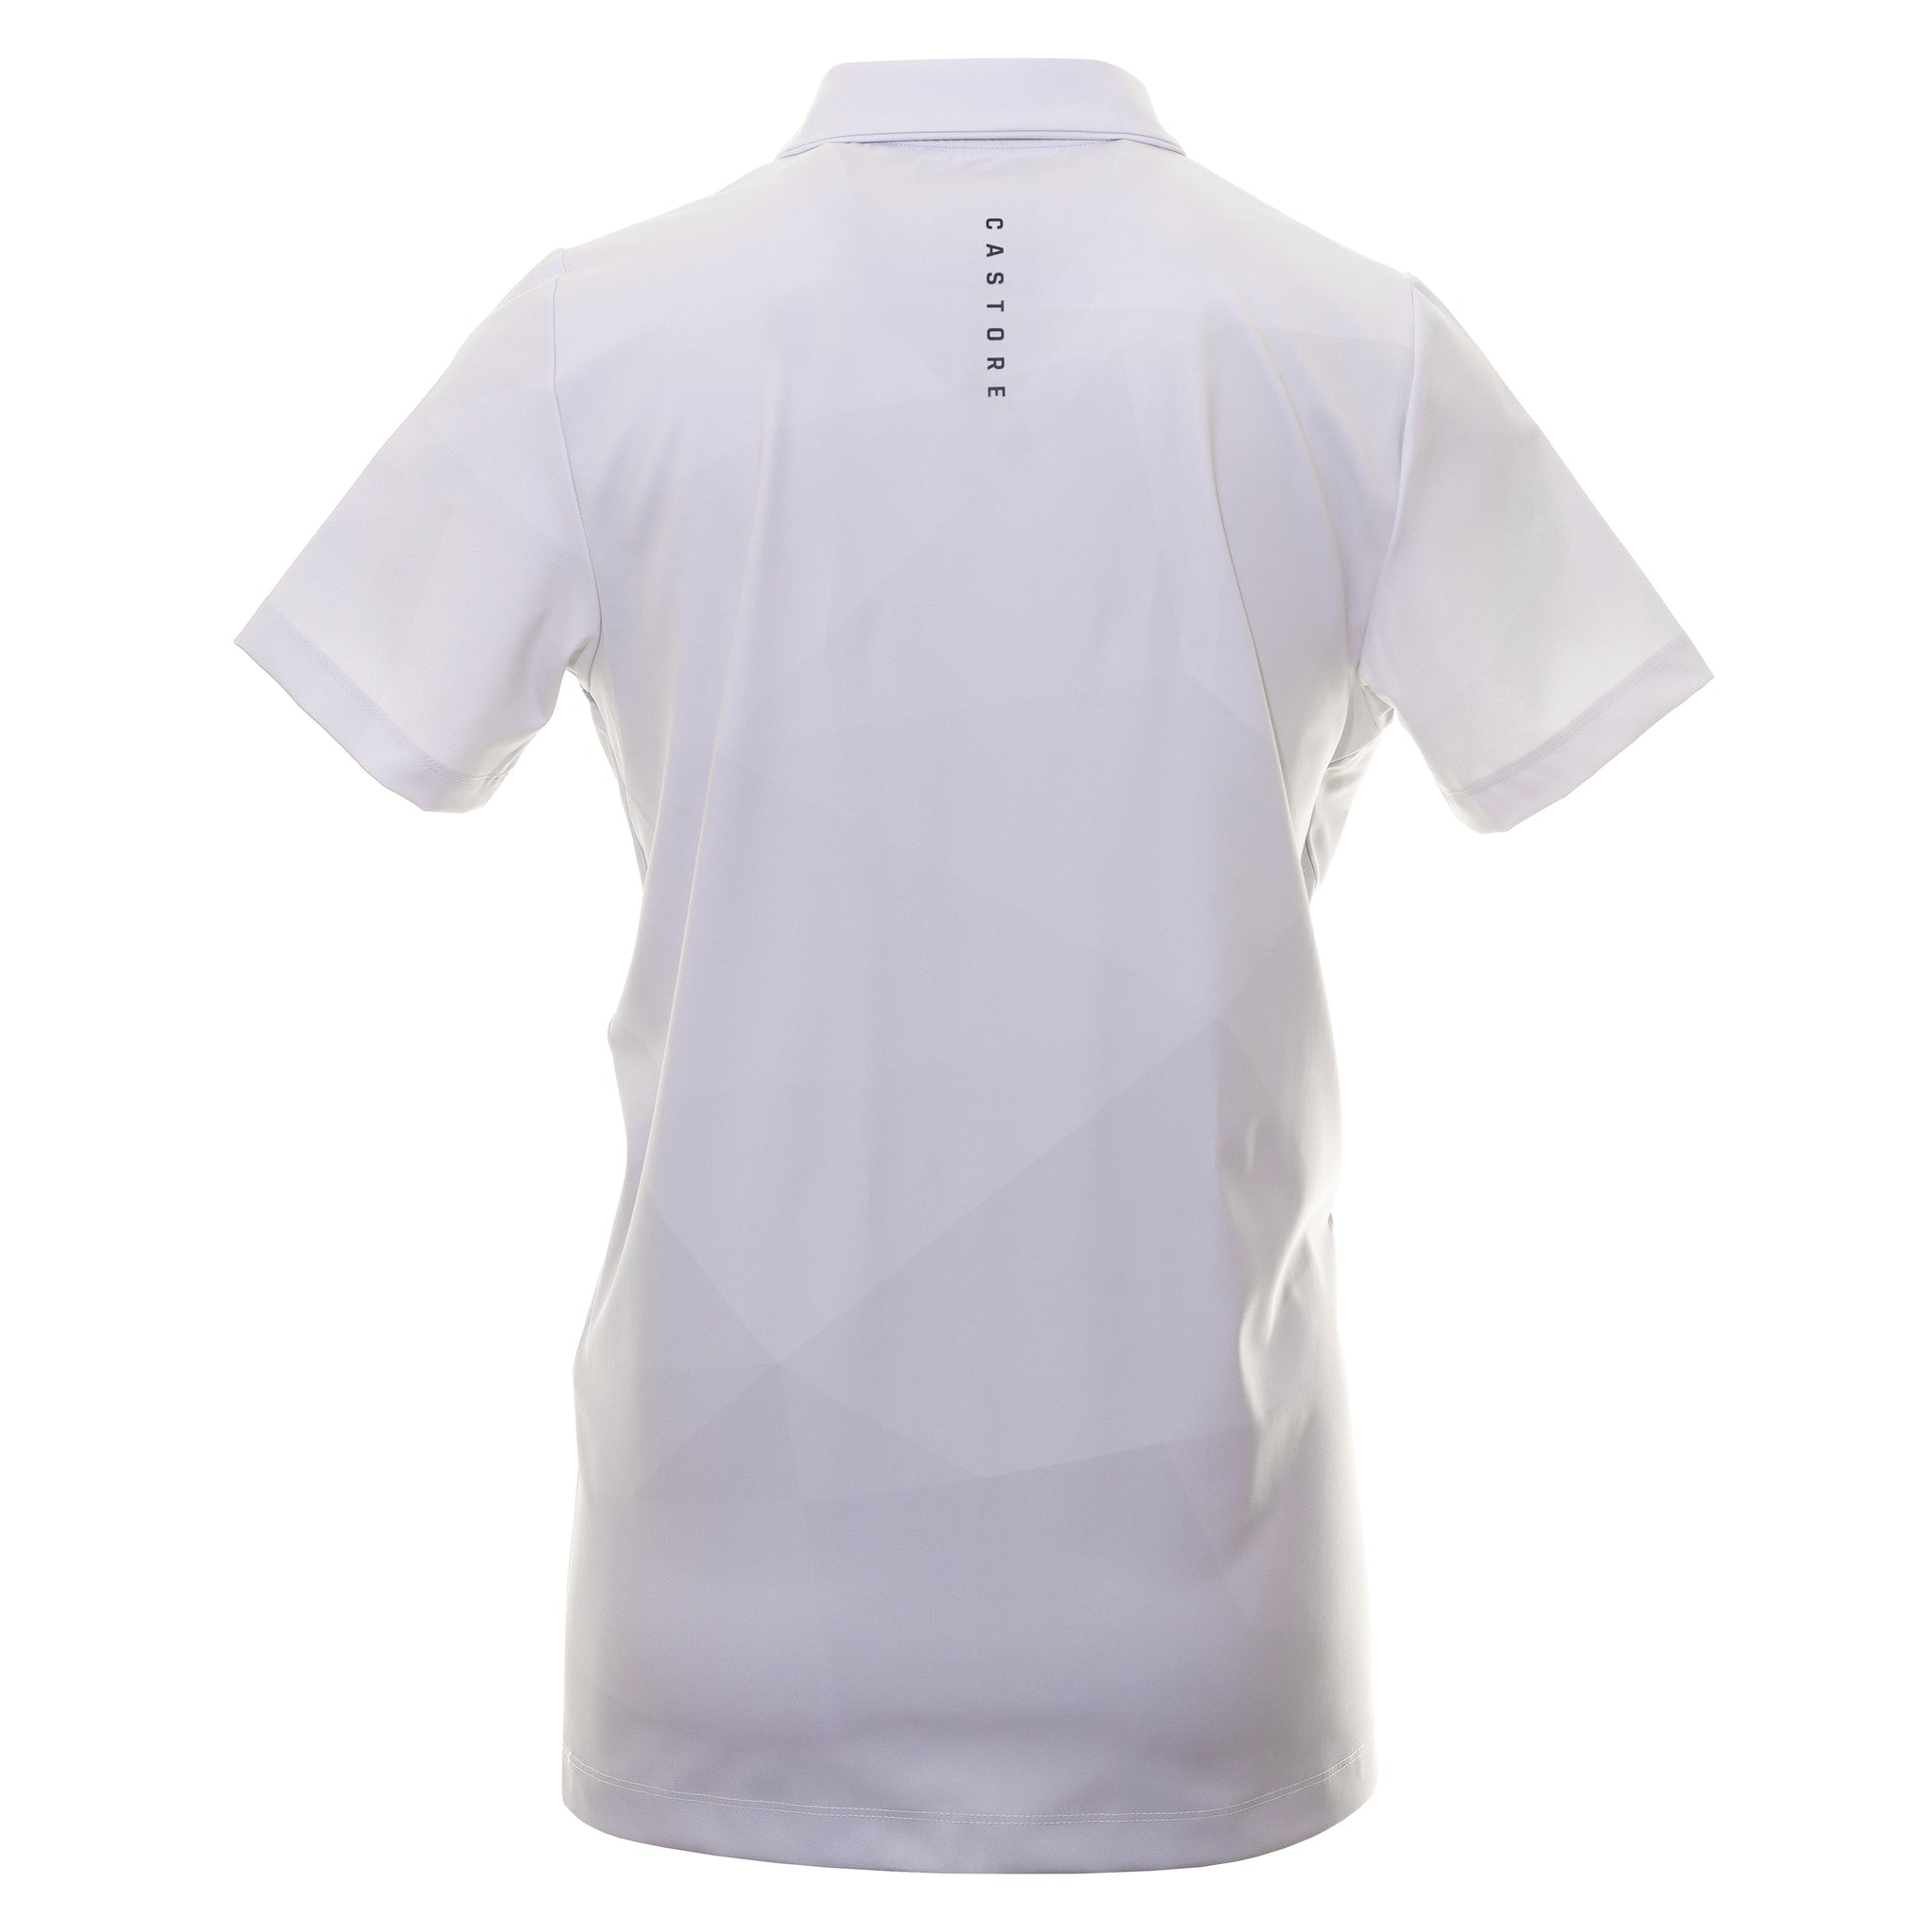 castore-printed-golf-polo-shirt-cma30363-white